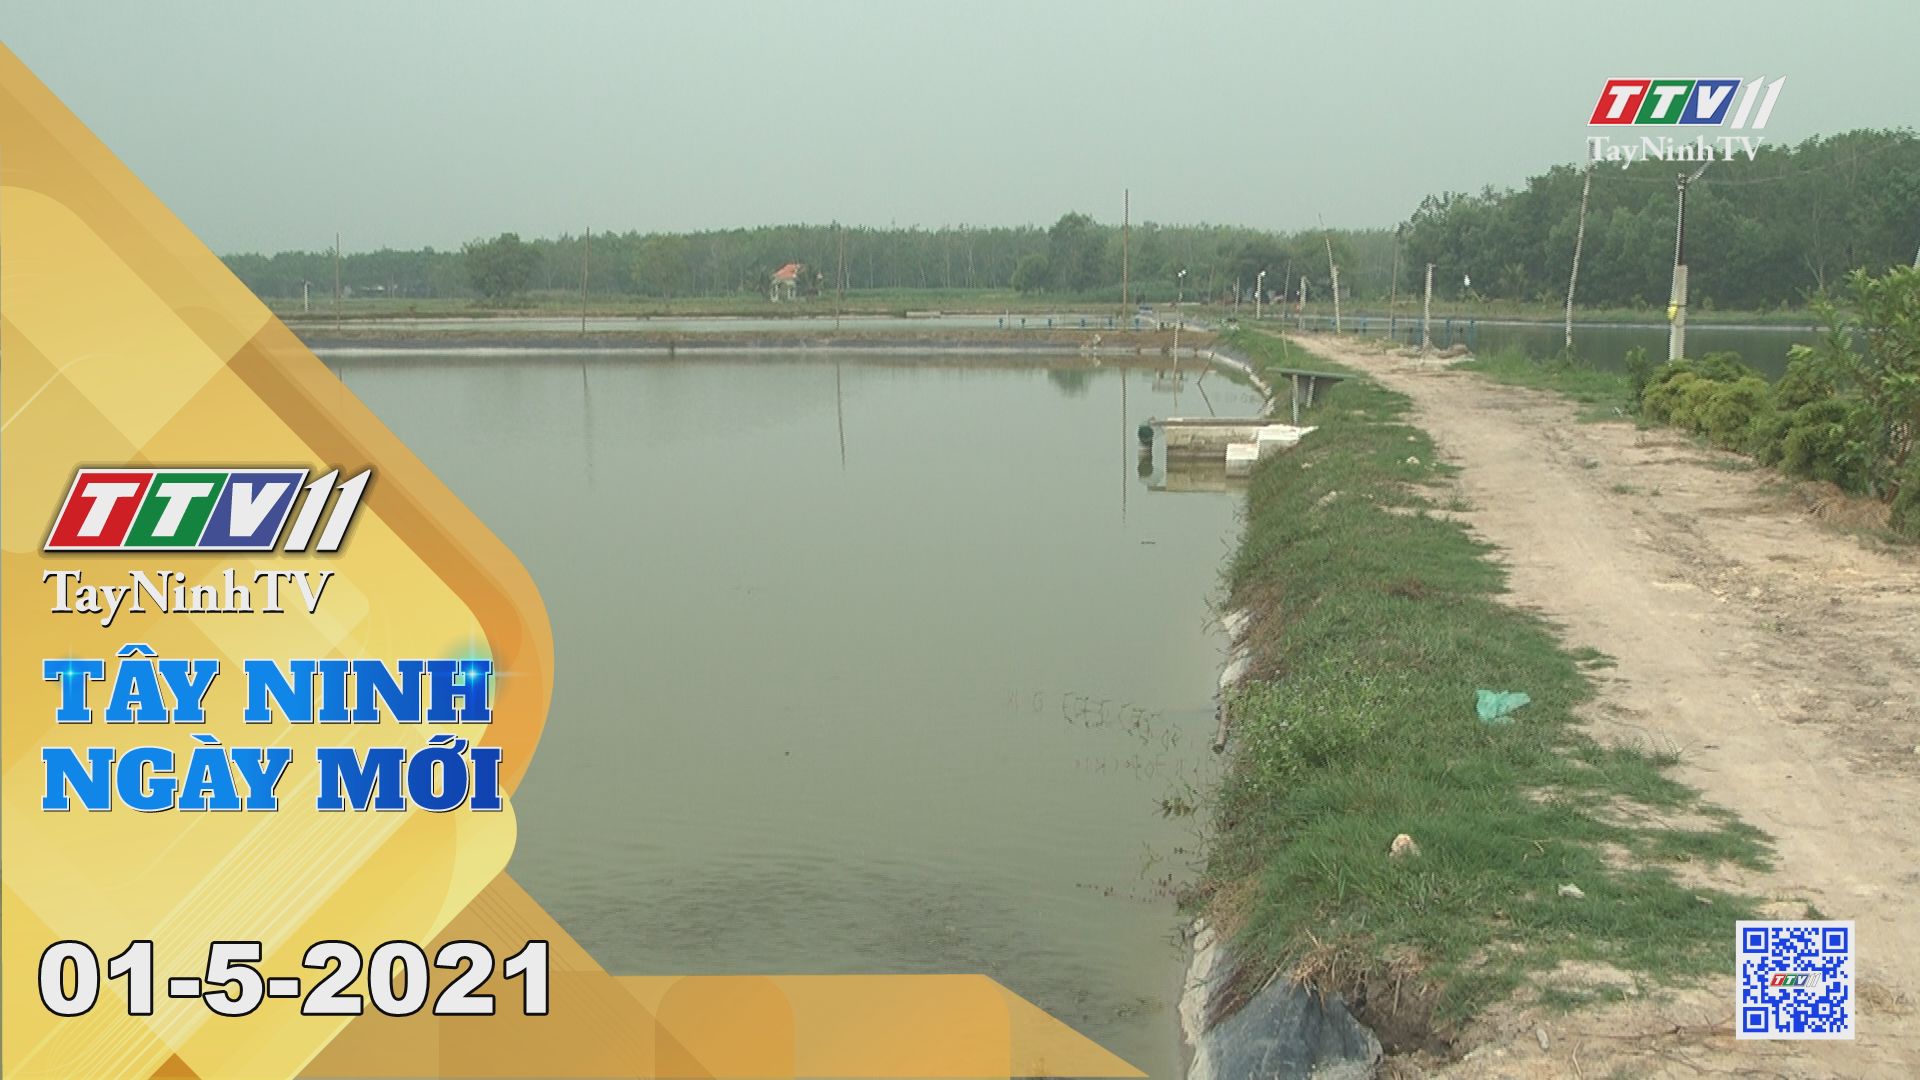 Tây Ninh Ngày Mới 01-5-2021 | Tin tức hôm nay | TayNinhTV